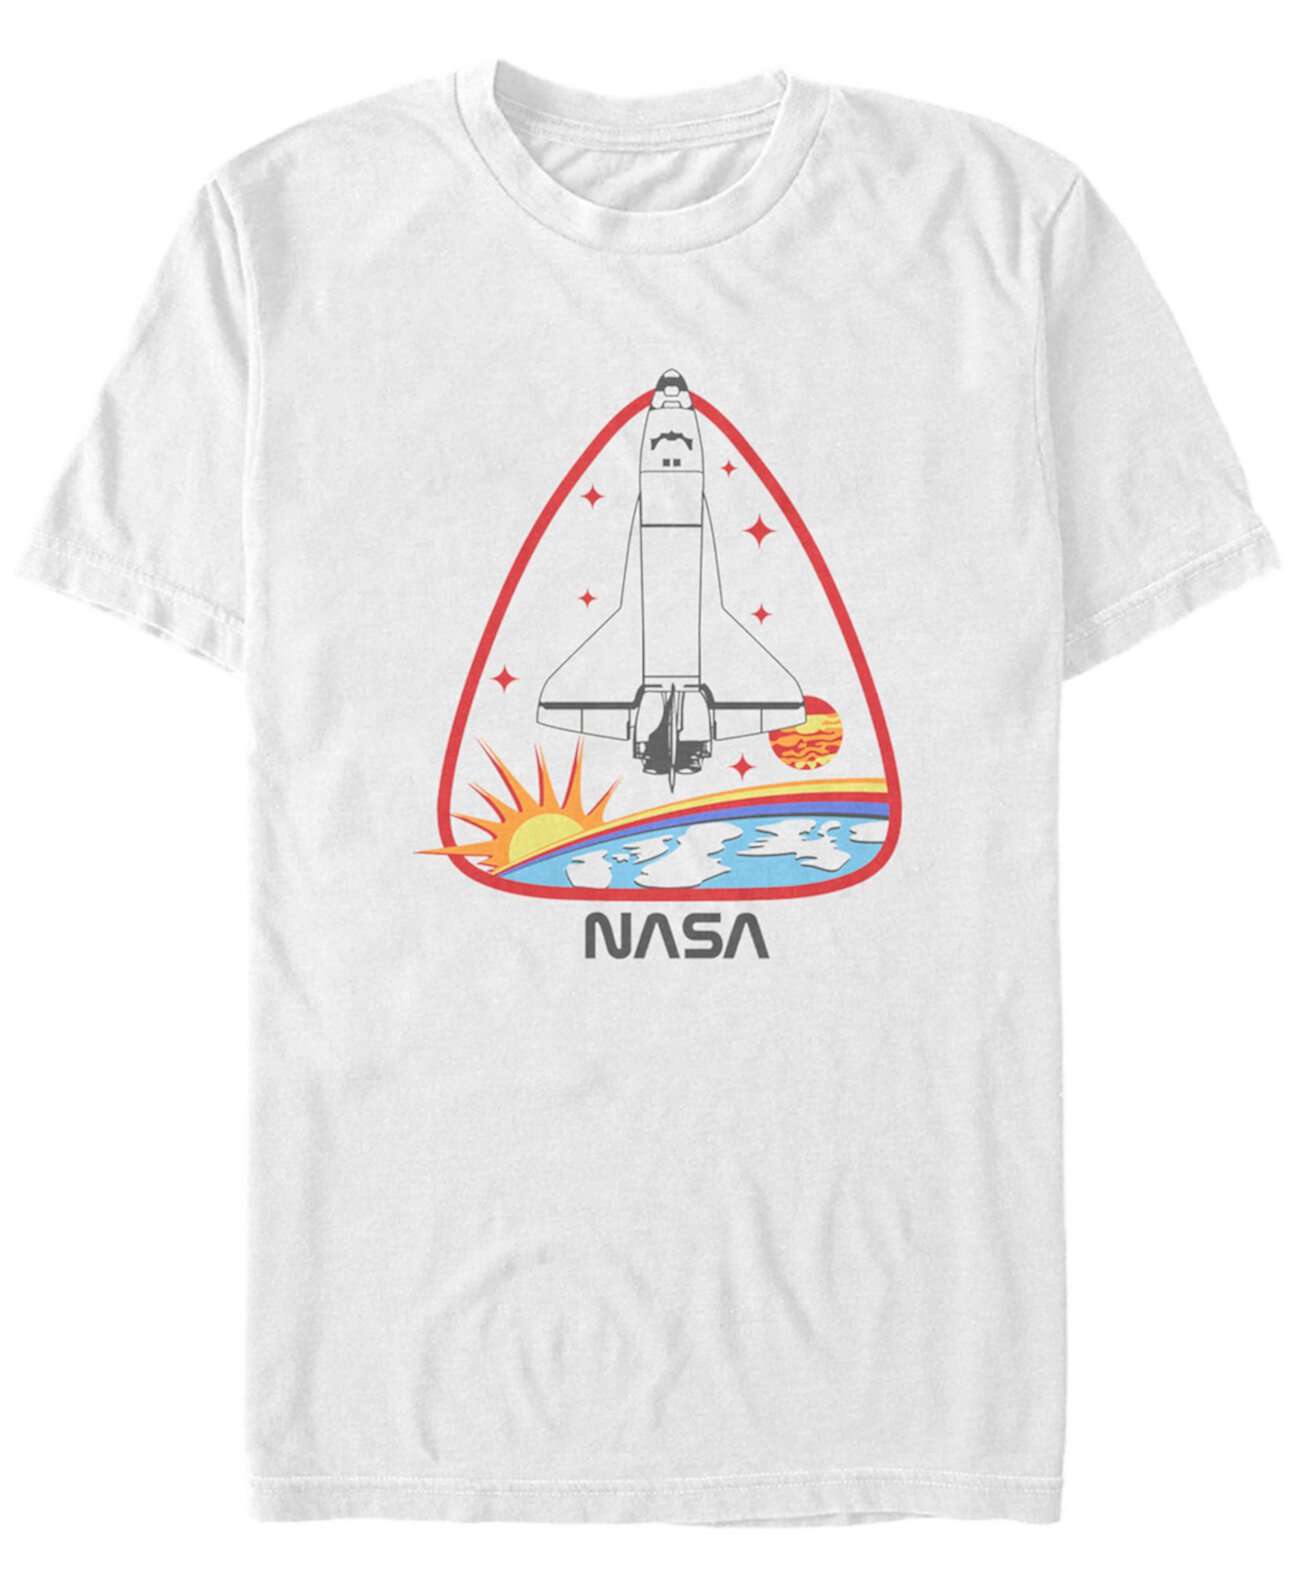 Мужская футболка с короткими рукавами и значком ракетного корабля NASA FIFTH SUN